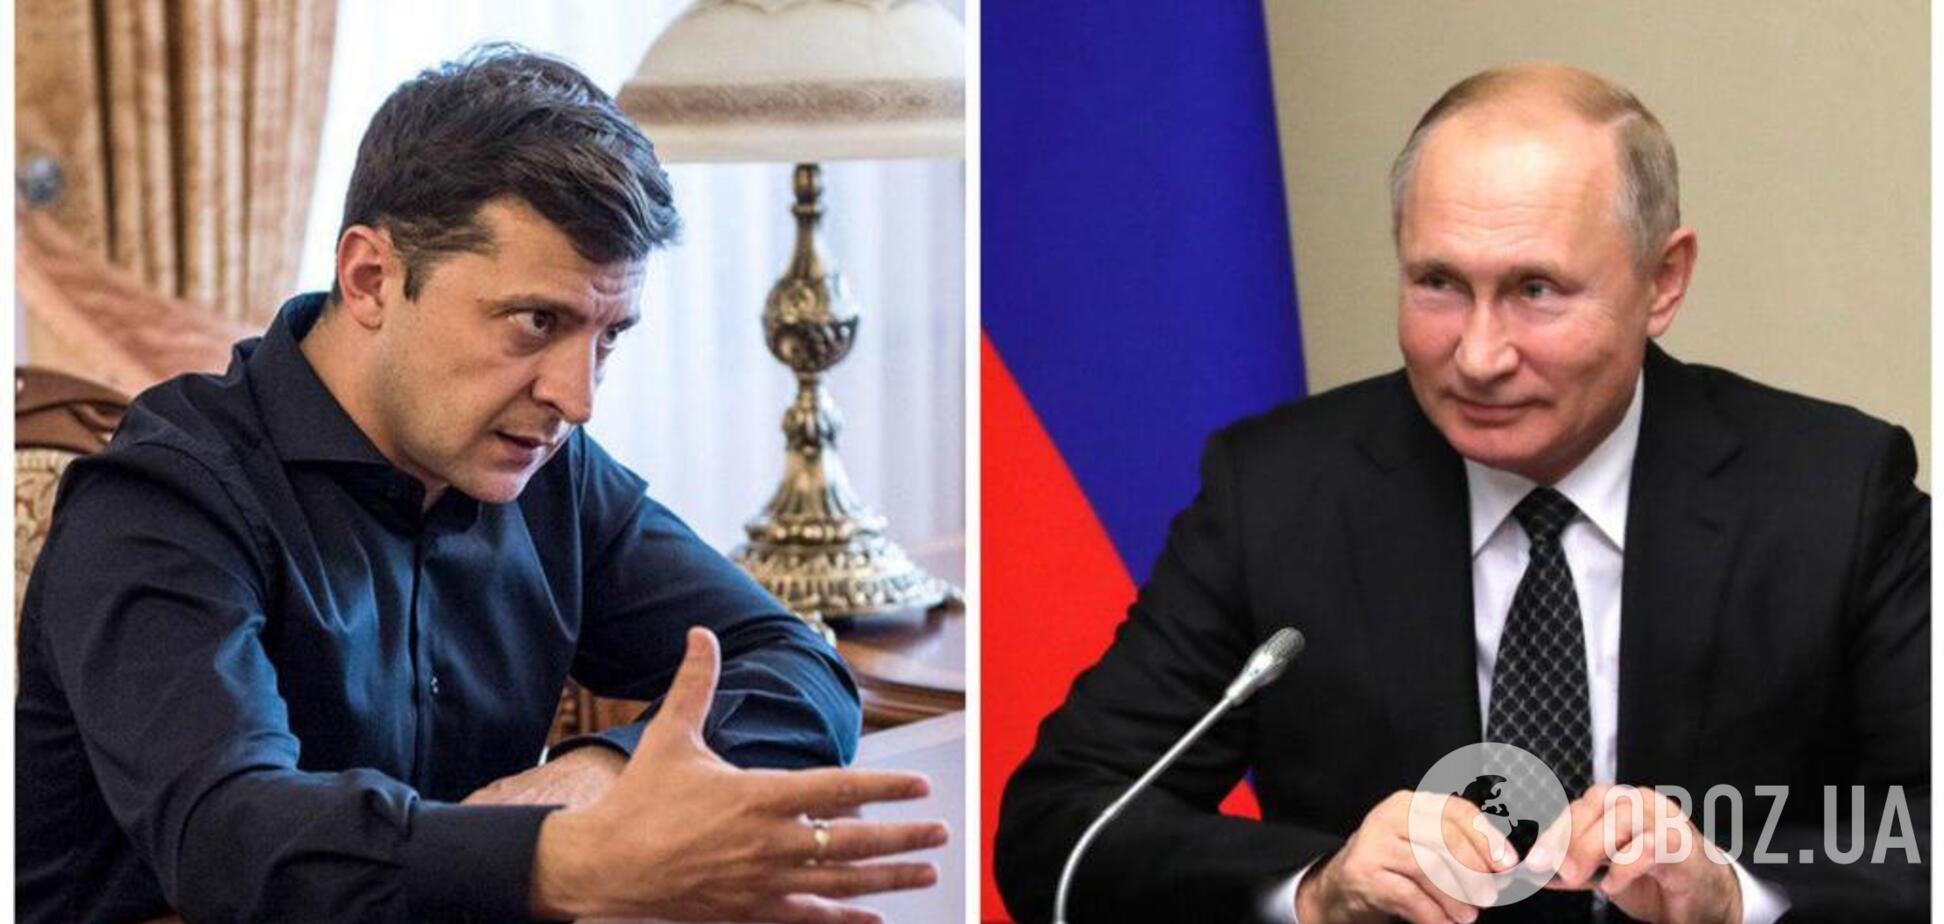 Зеленский впервые встретился с Путиным: кто кого победит?